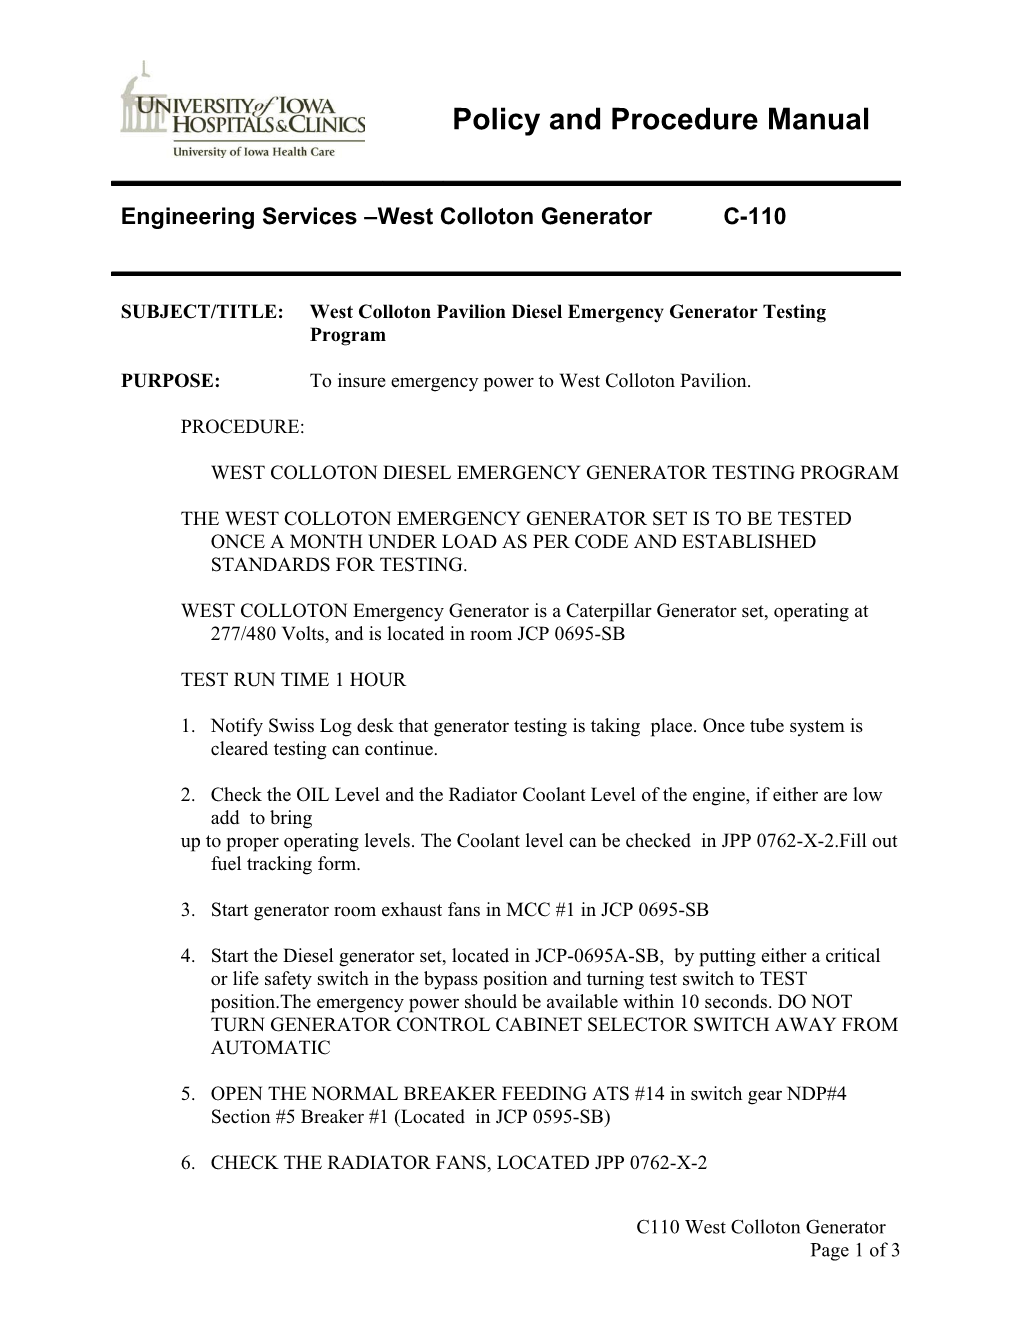 West Colloton Diesel Emergency Generator Testing Program